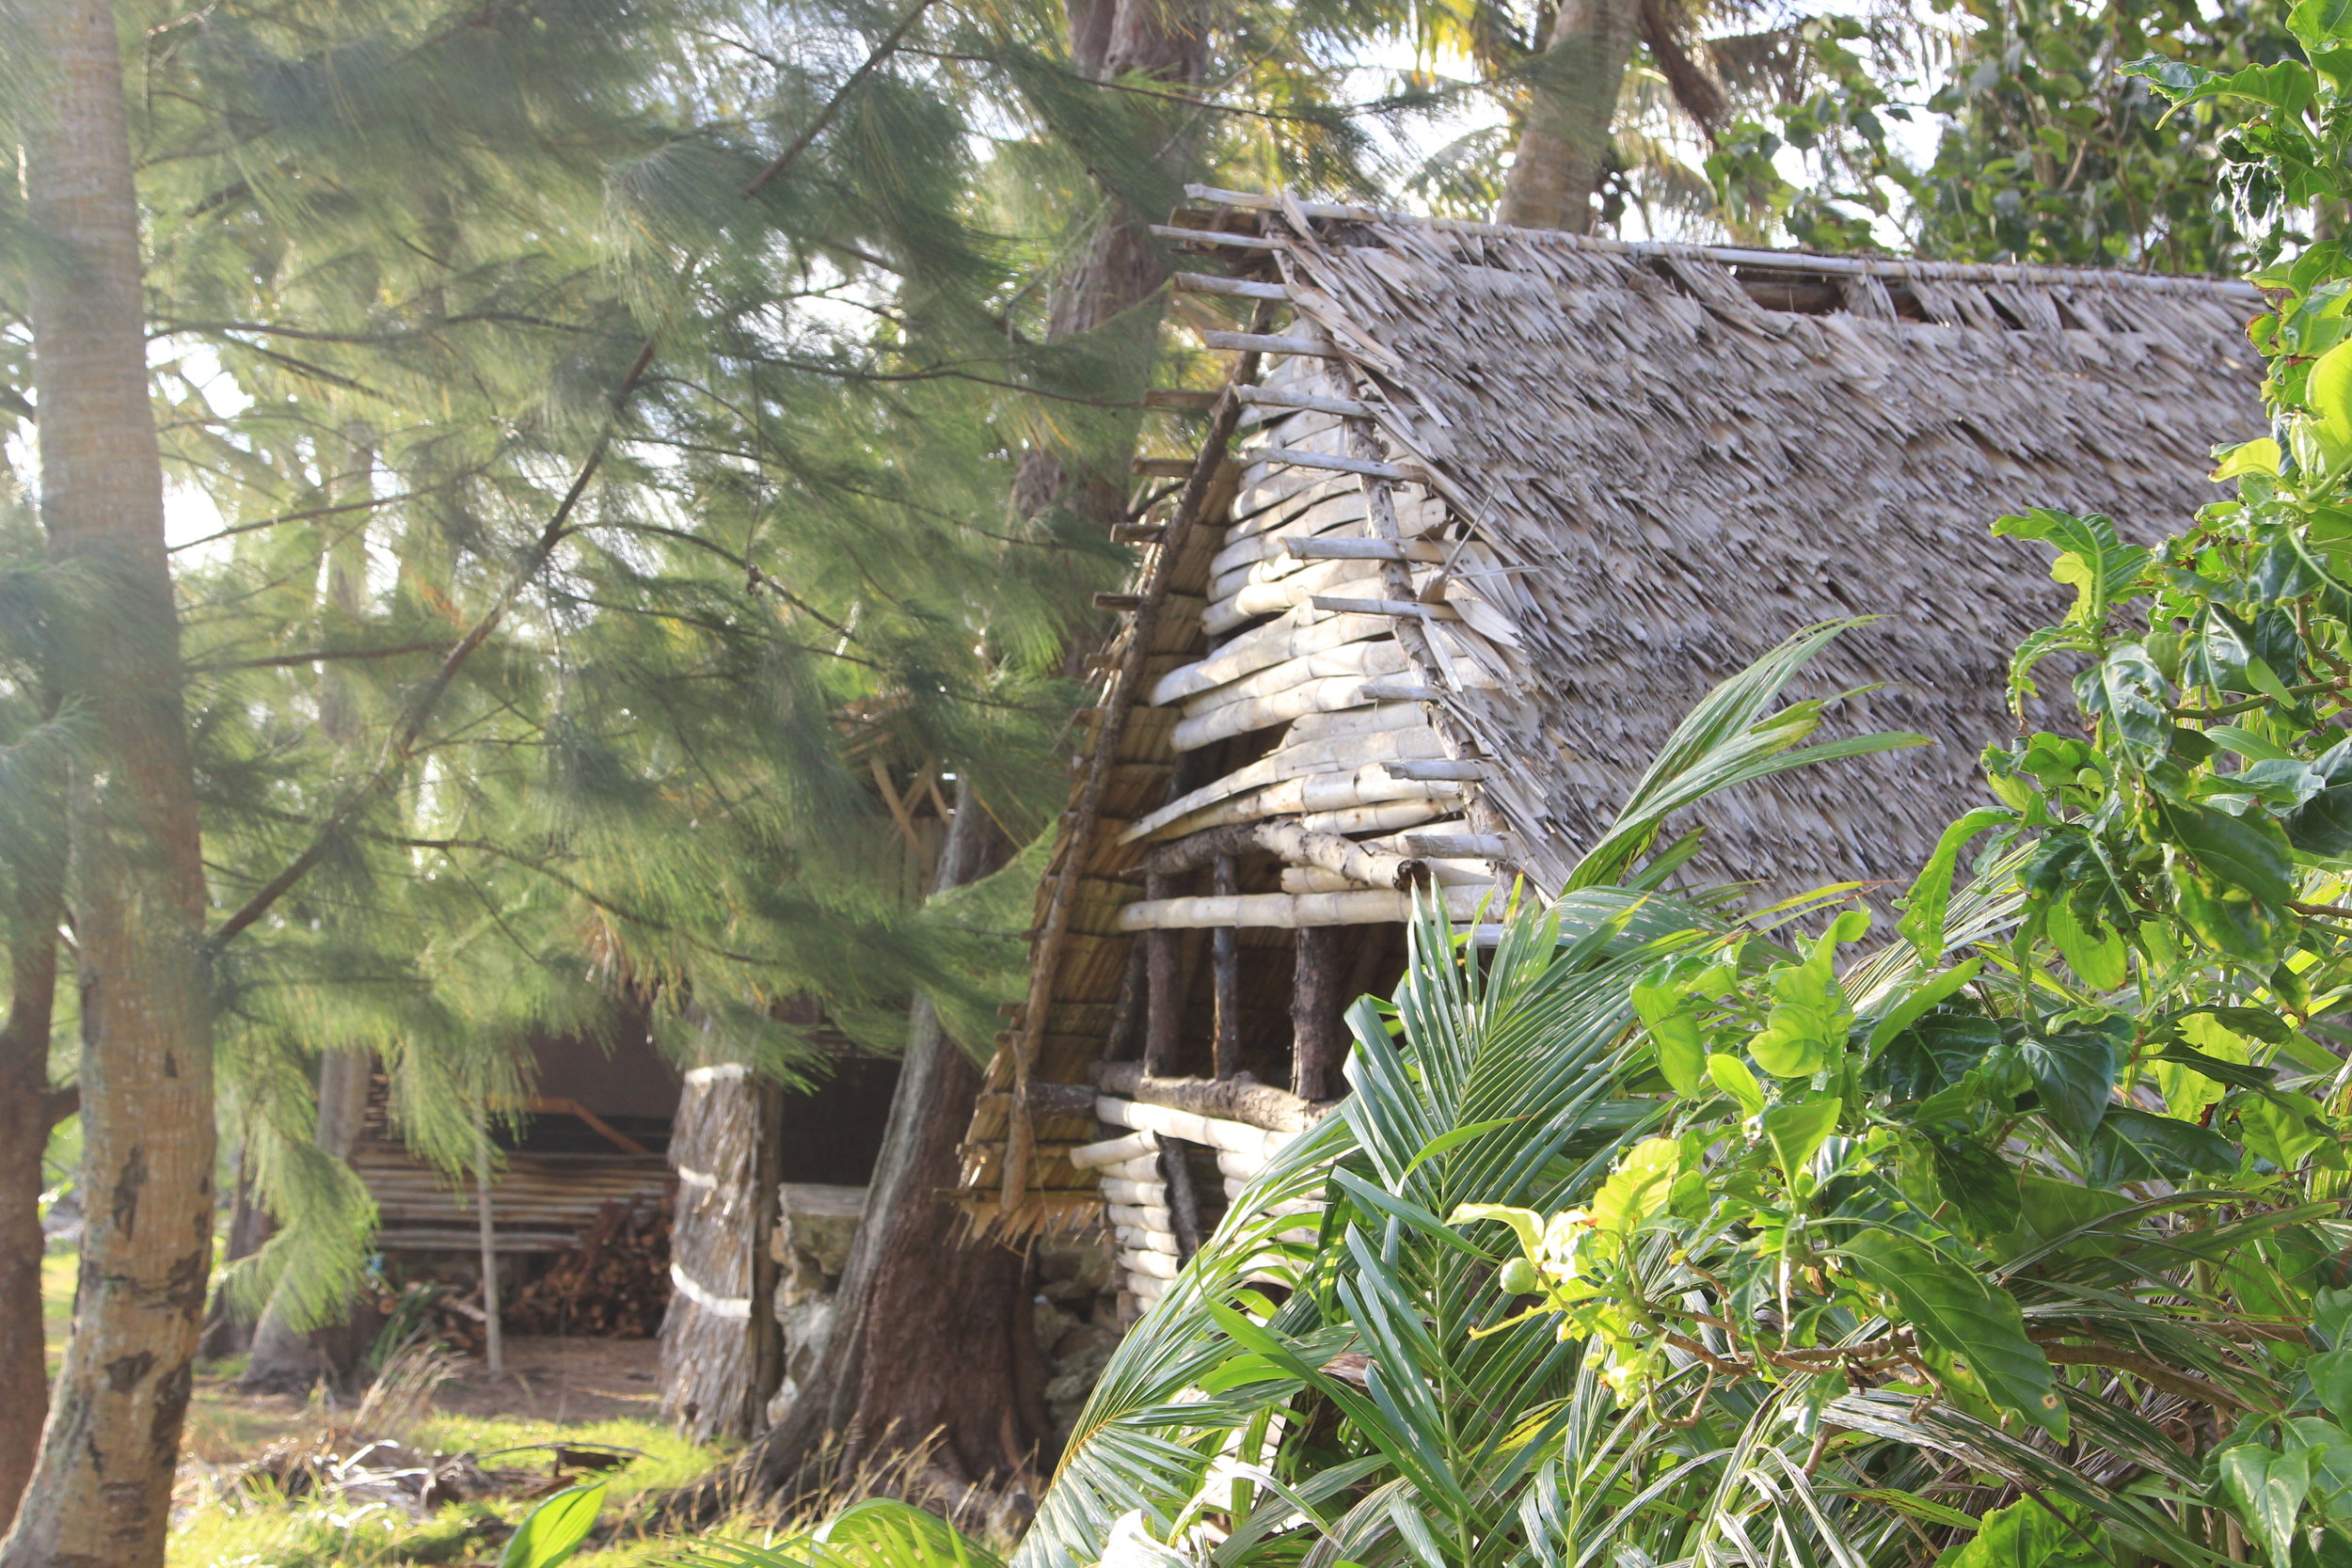 Hut at Gef Pa'go Cultural Village, Inarajan